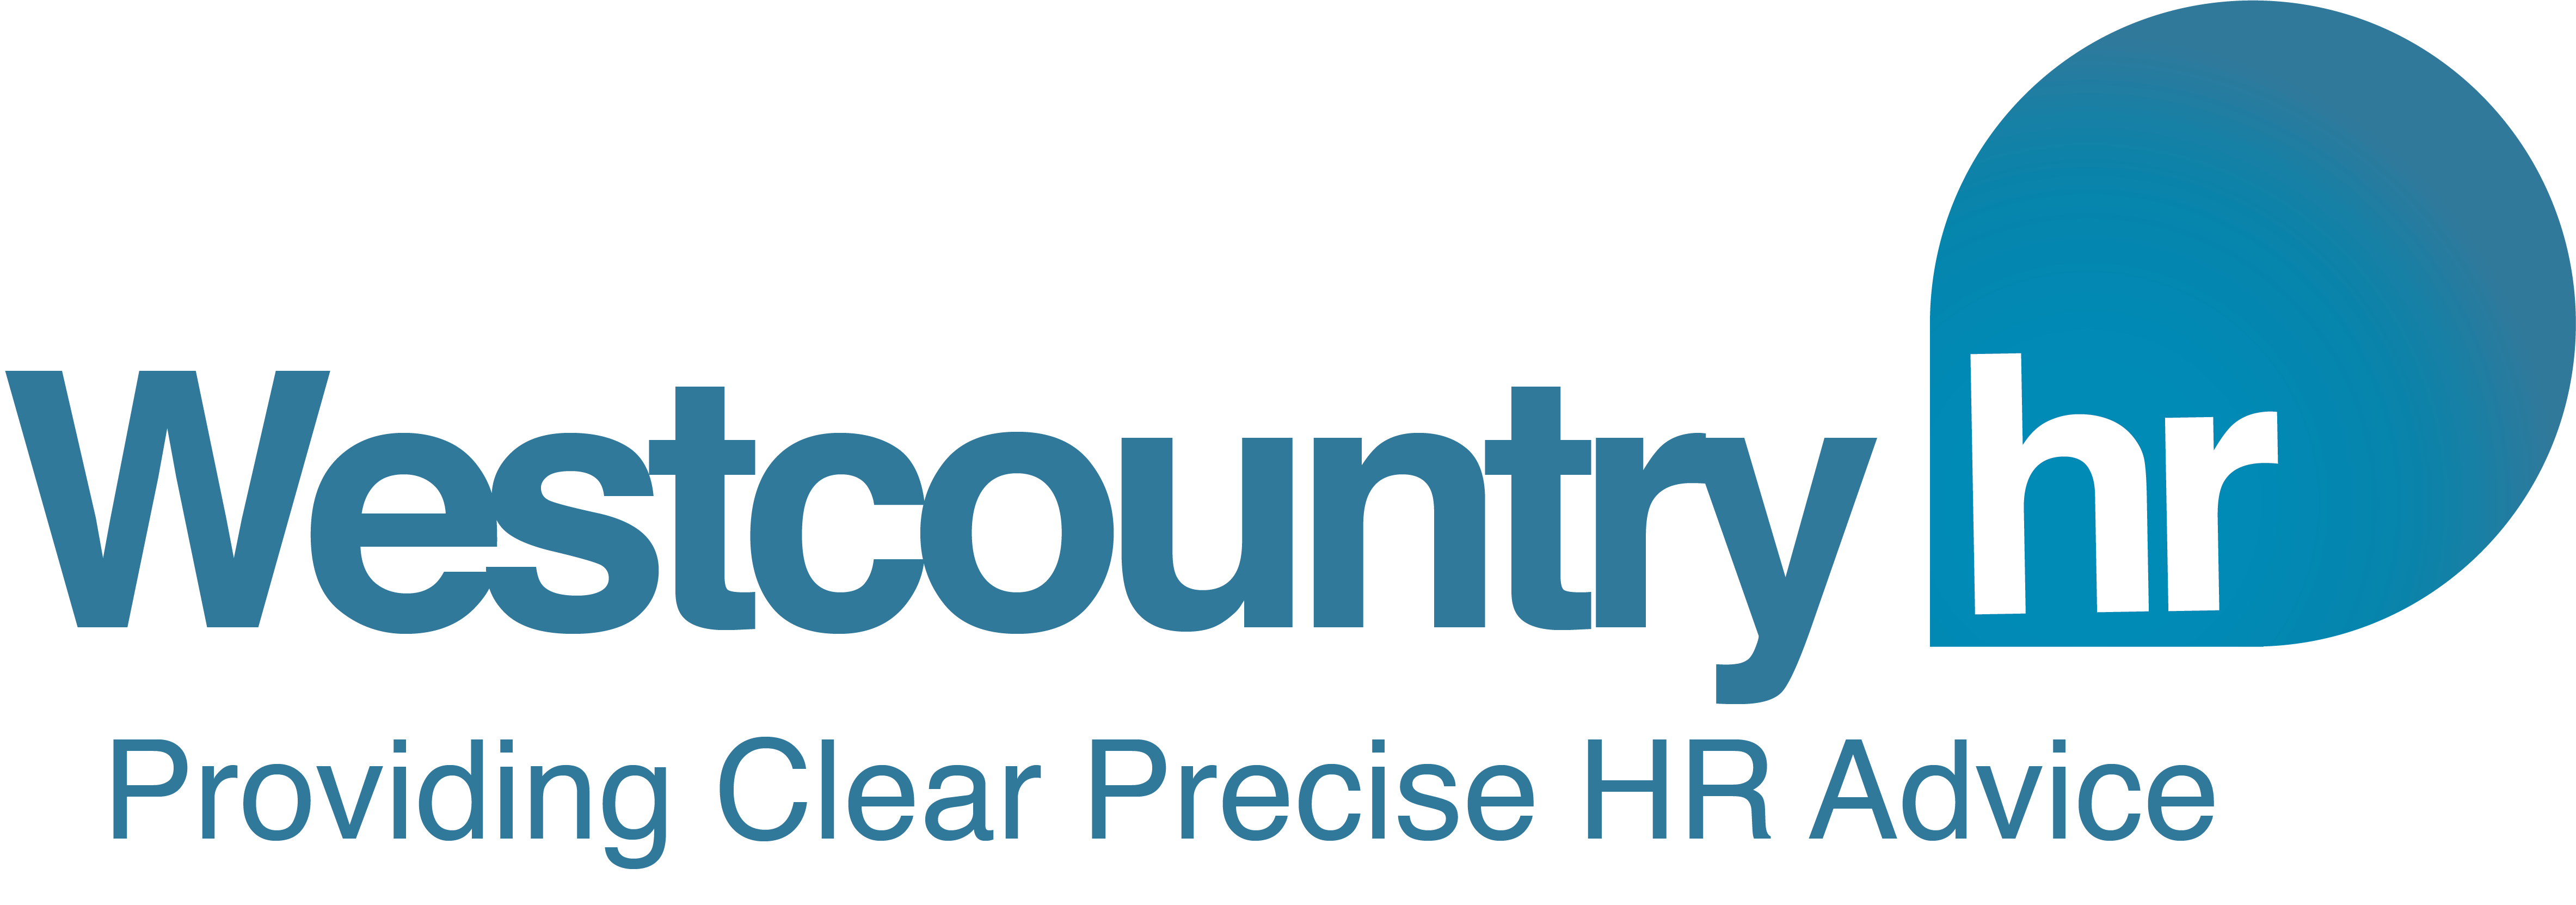 Westcountry HR logo